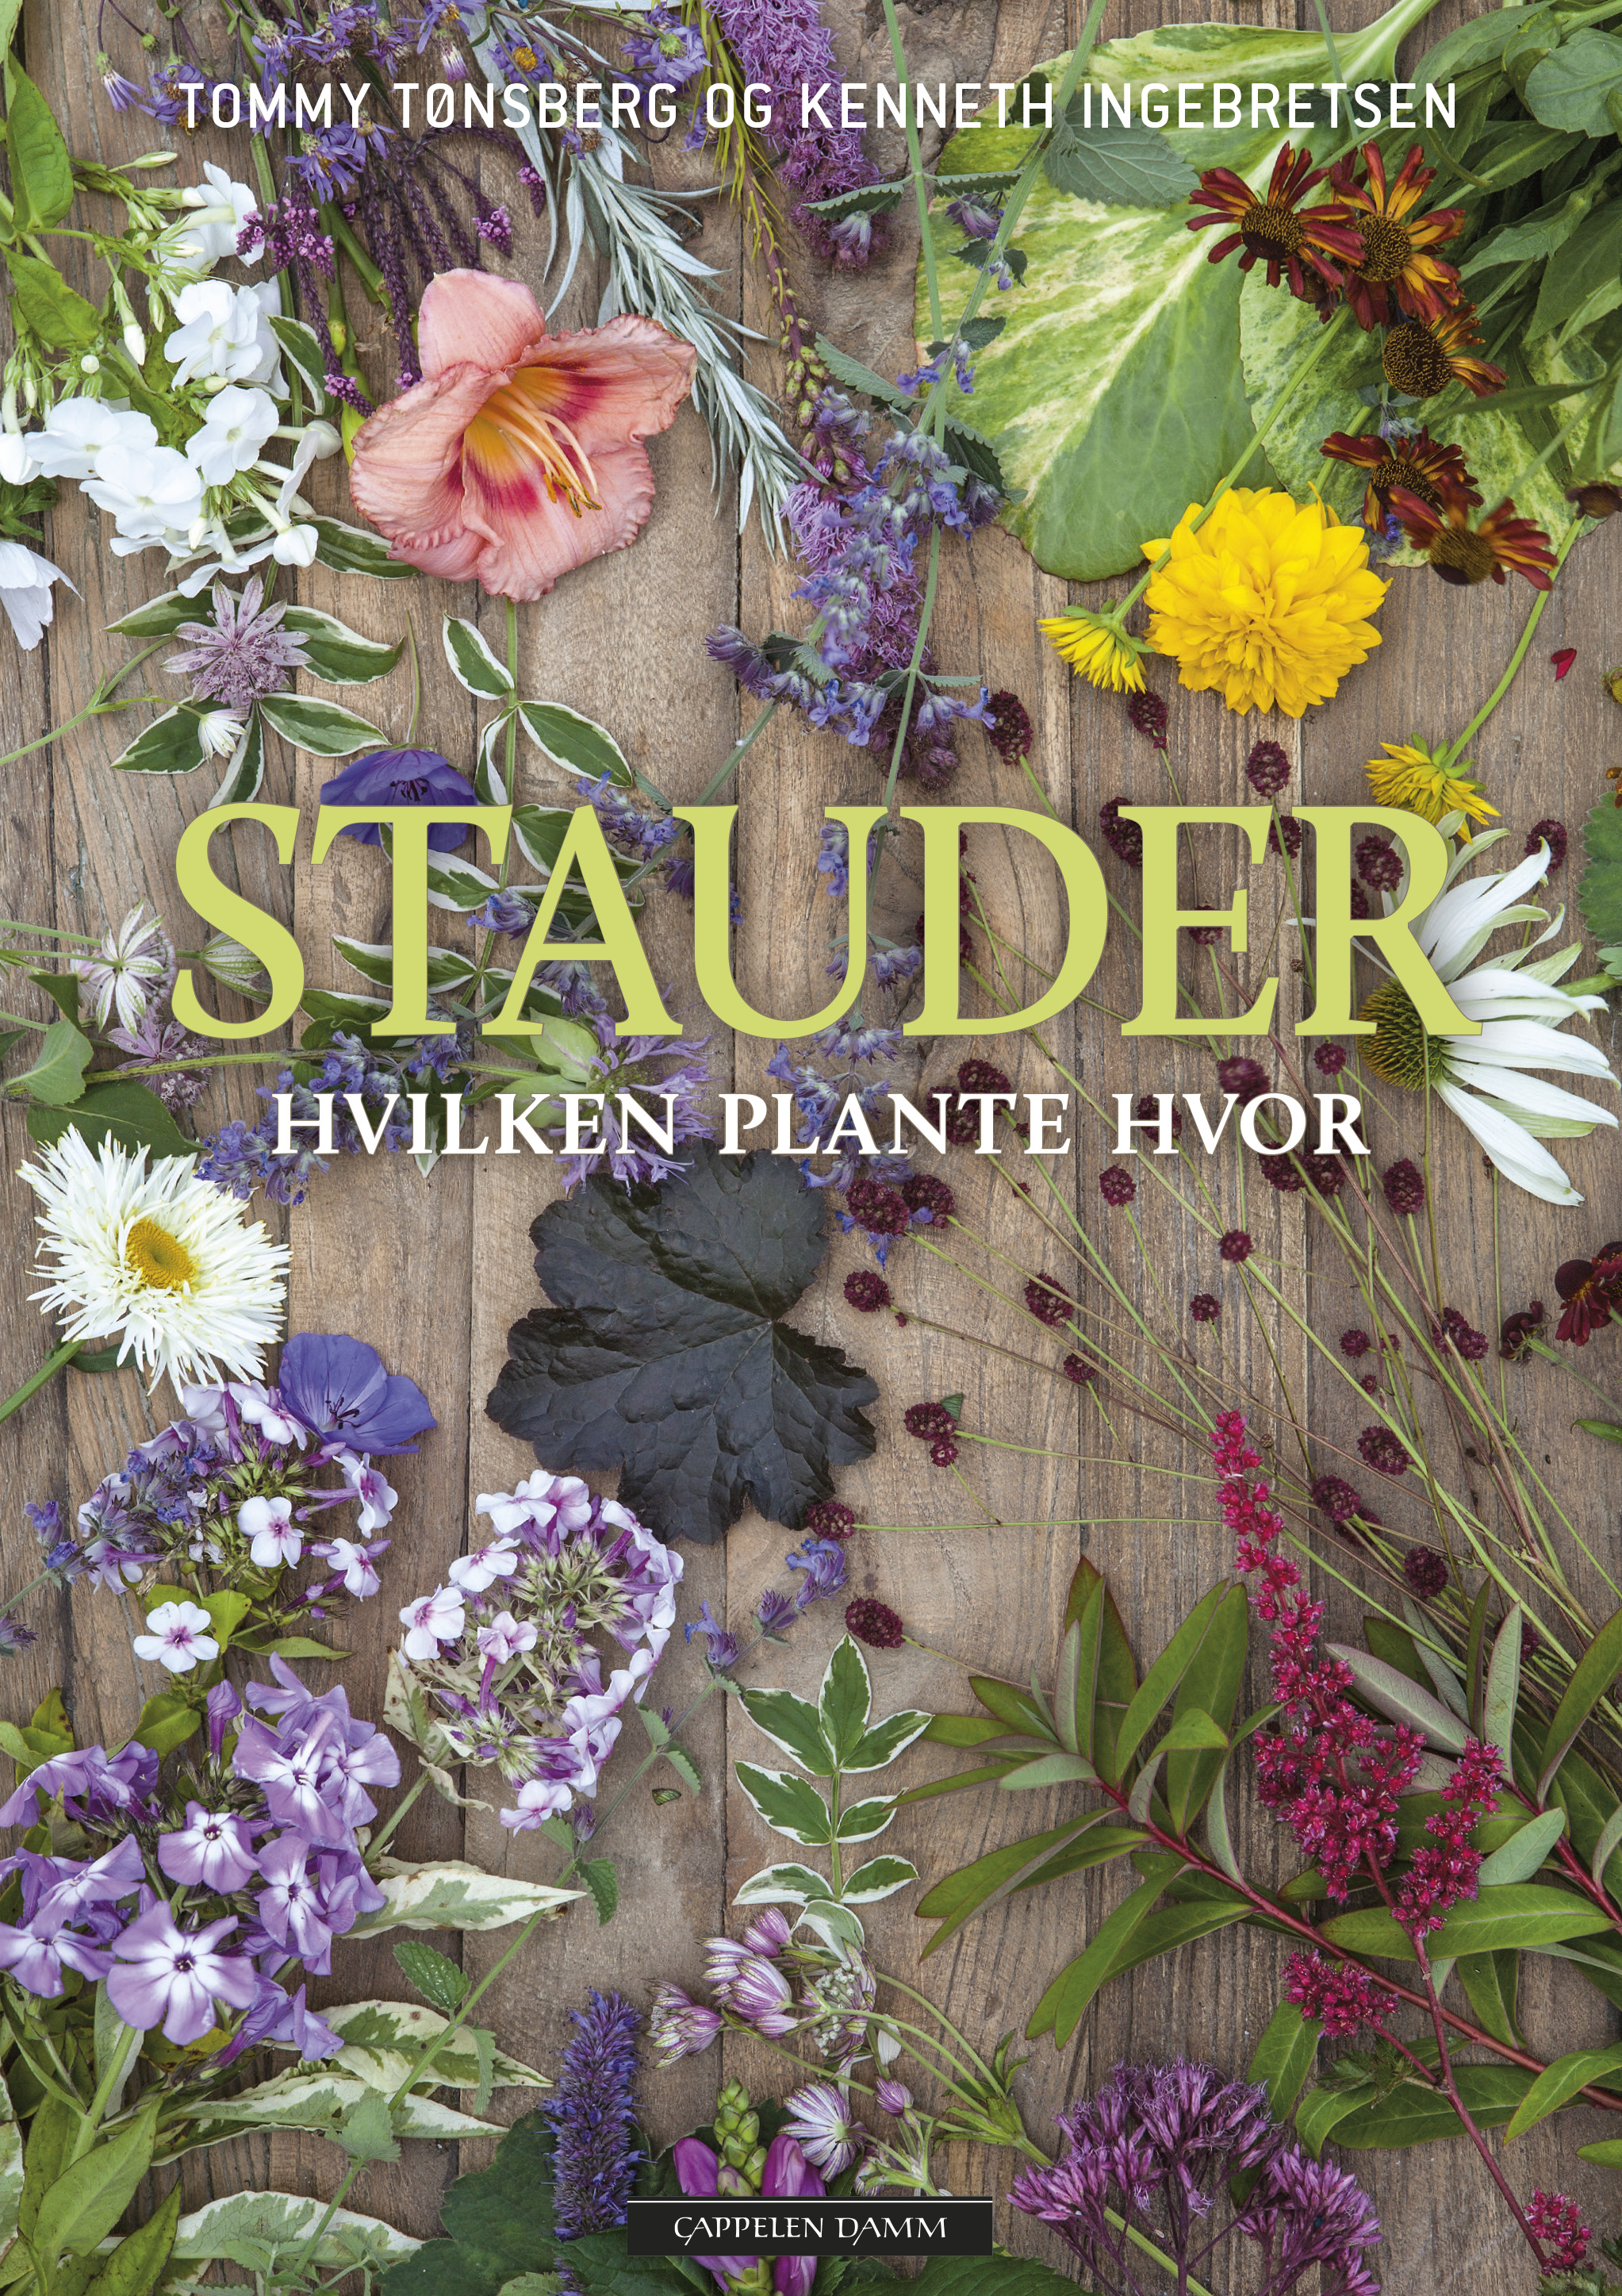 Stauder – plante hvor av Kenneth Ingebretsen - interiør hage | Cappelen Damm